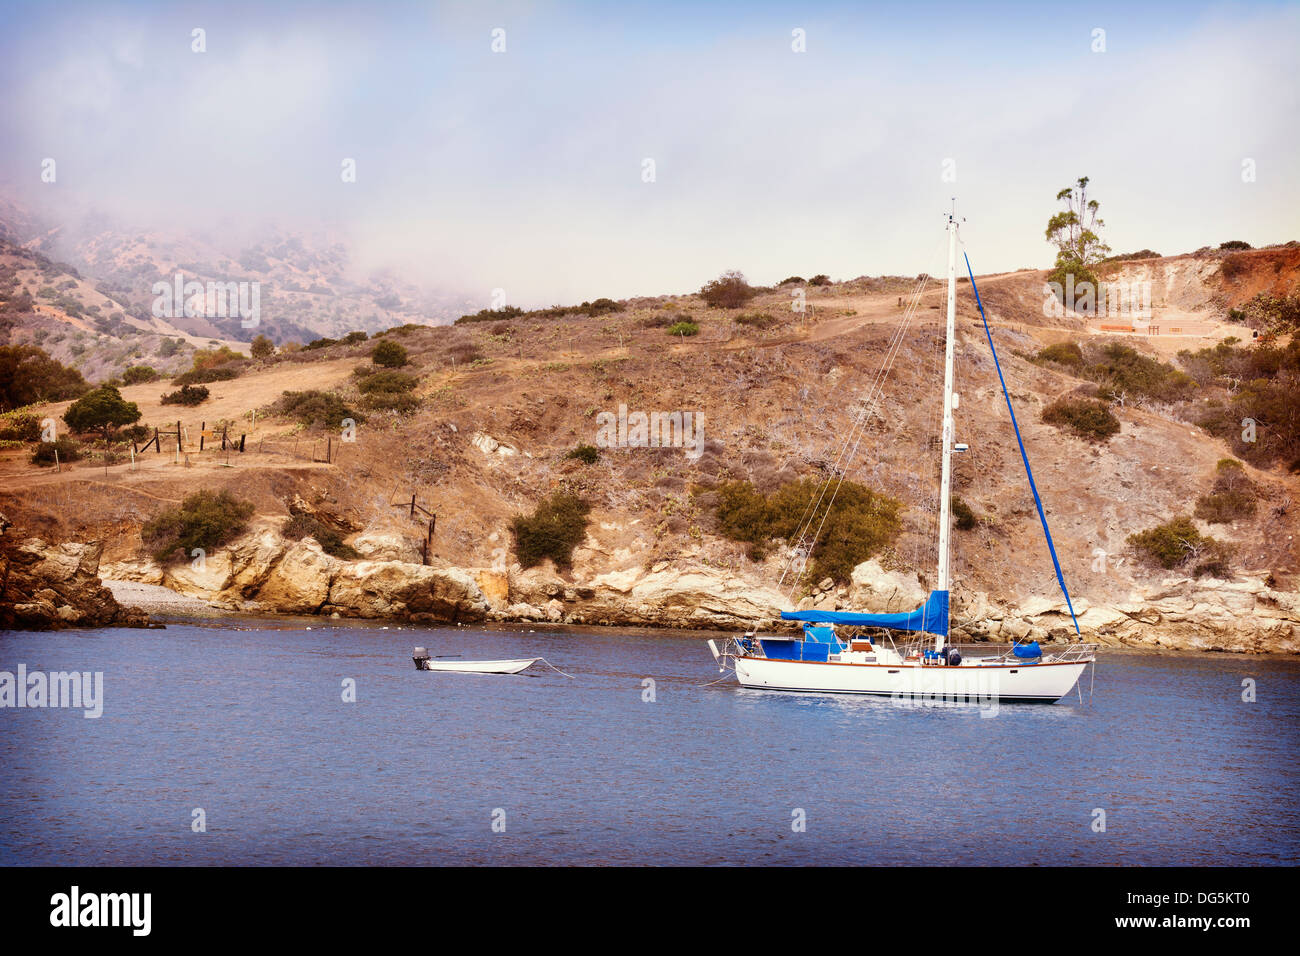 Un voilier et terne et ancrée dans une baie à l'île de Catalina. Banque D'Images